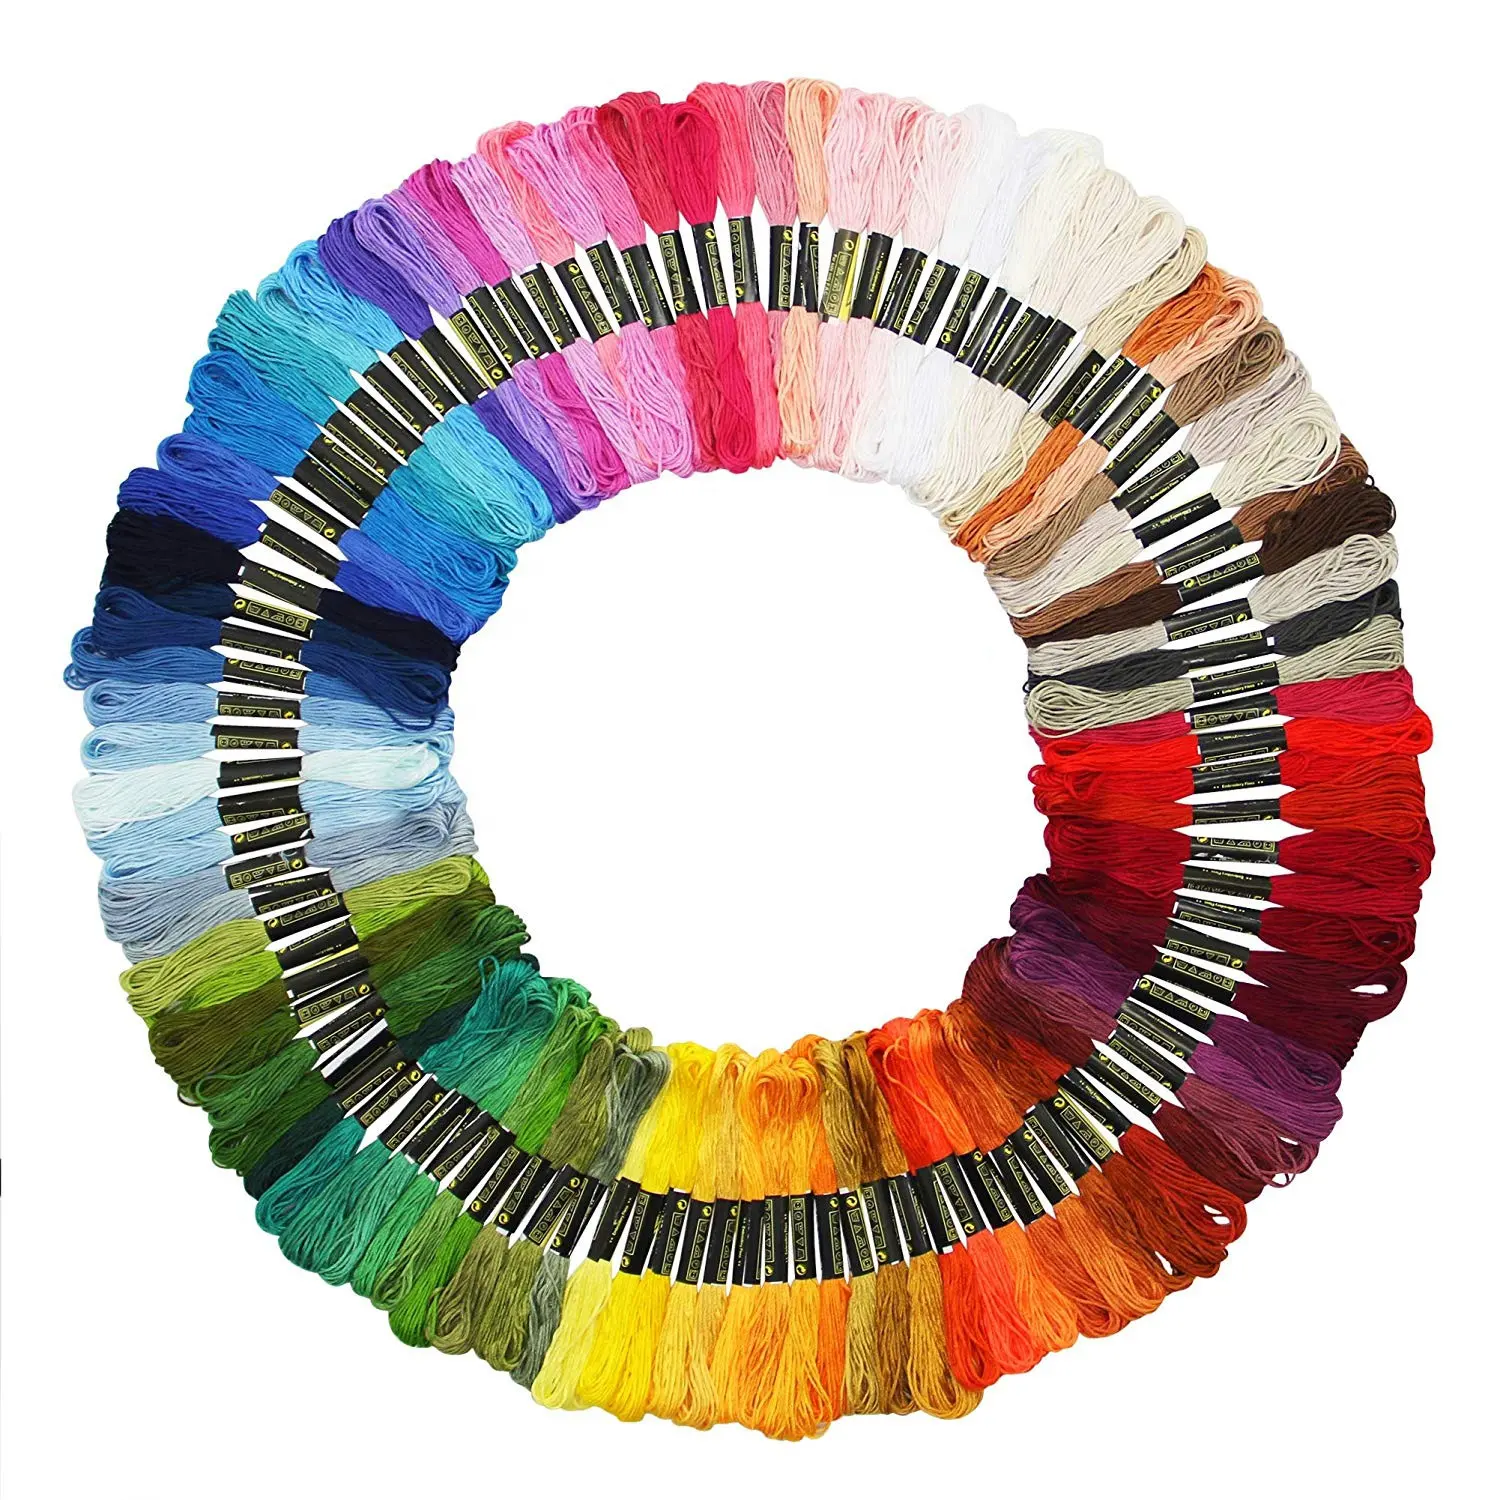 50/100 разноцветные косынки из ниток для вышивки, спицы для вязания, браслеты, цветные нитки для вышивки крестиком, хлопковые косынки для шитья